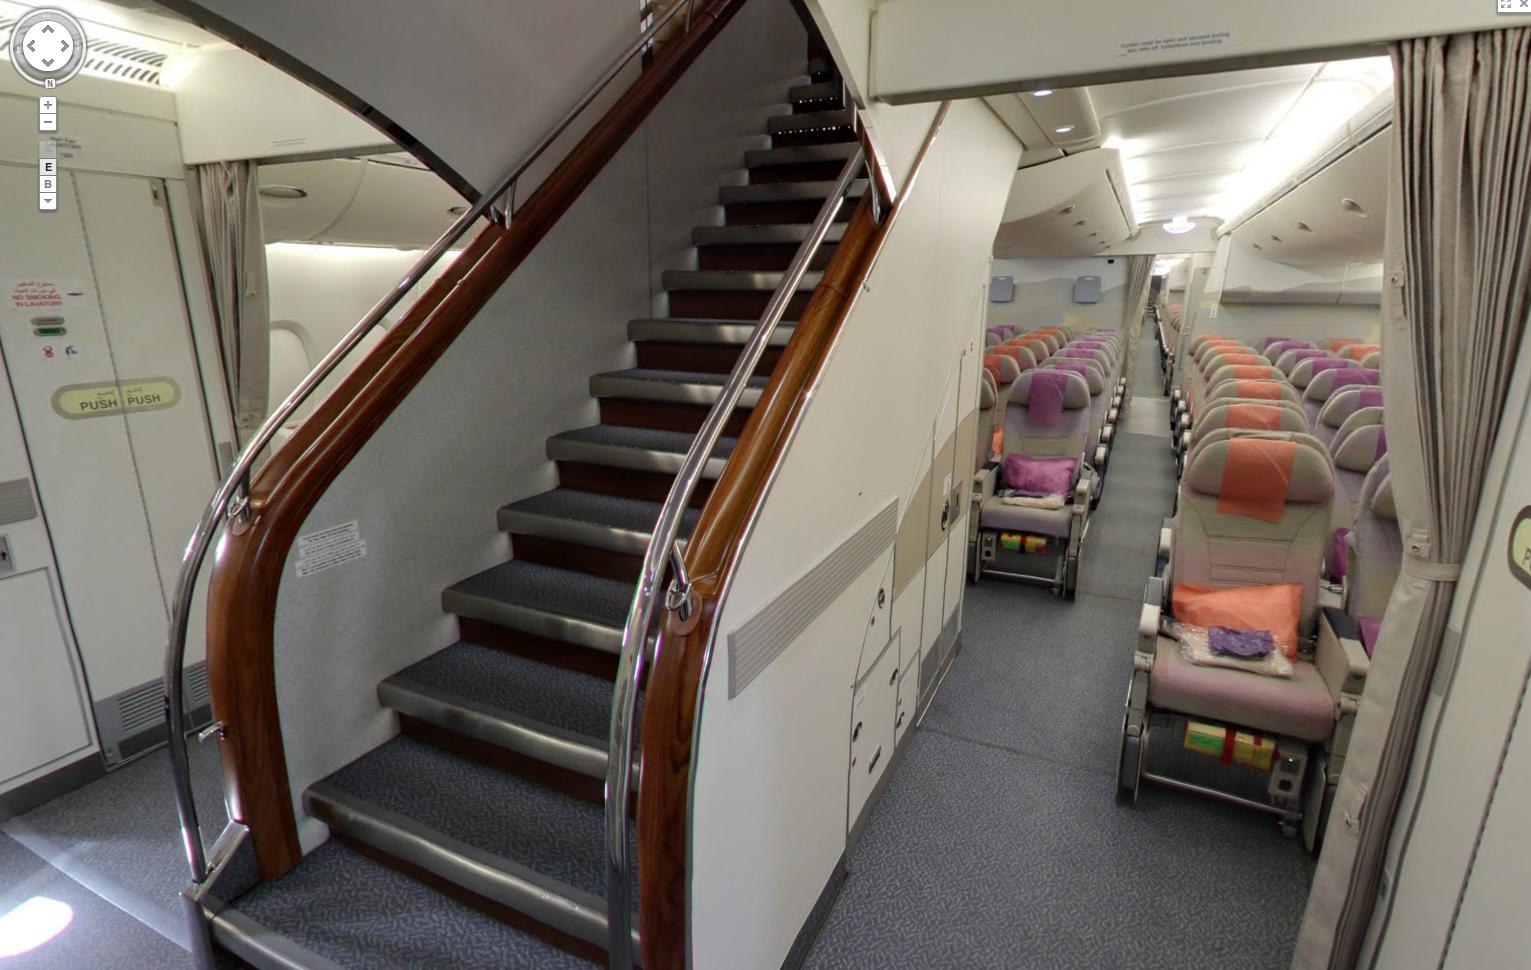 On board Emirates: equipaje de mano, menús, entretenimiento - Foro Aviones, Aeropuertos y Líneas Aéreas